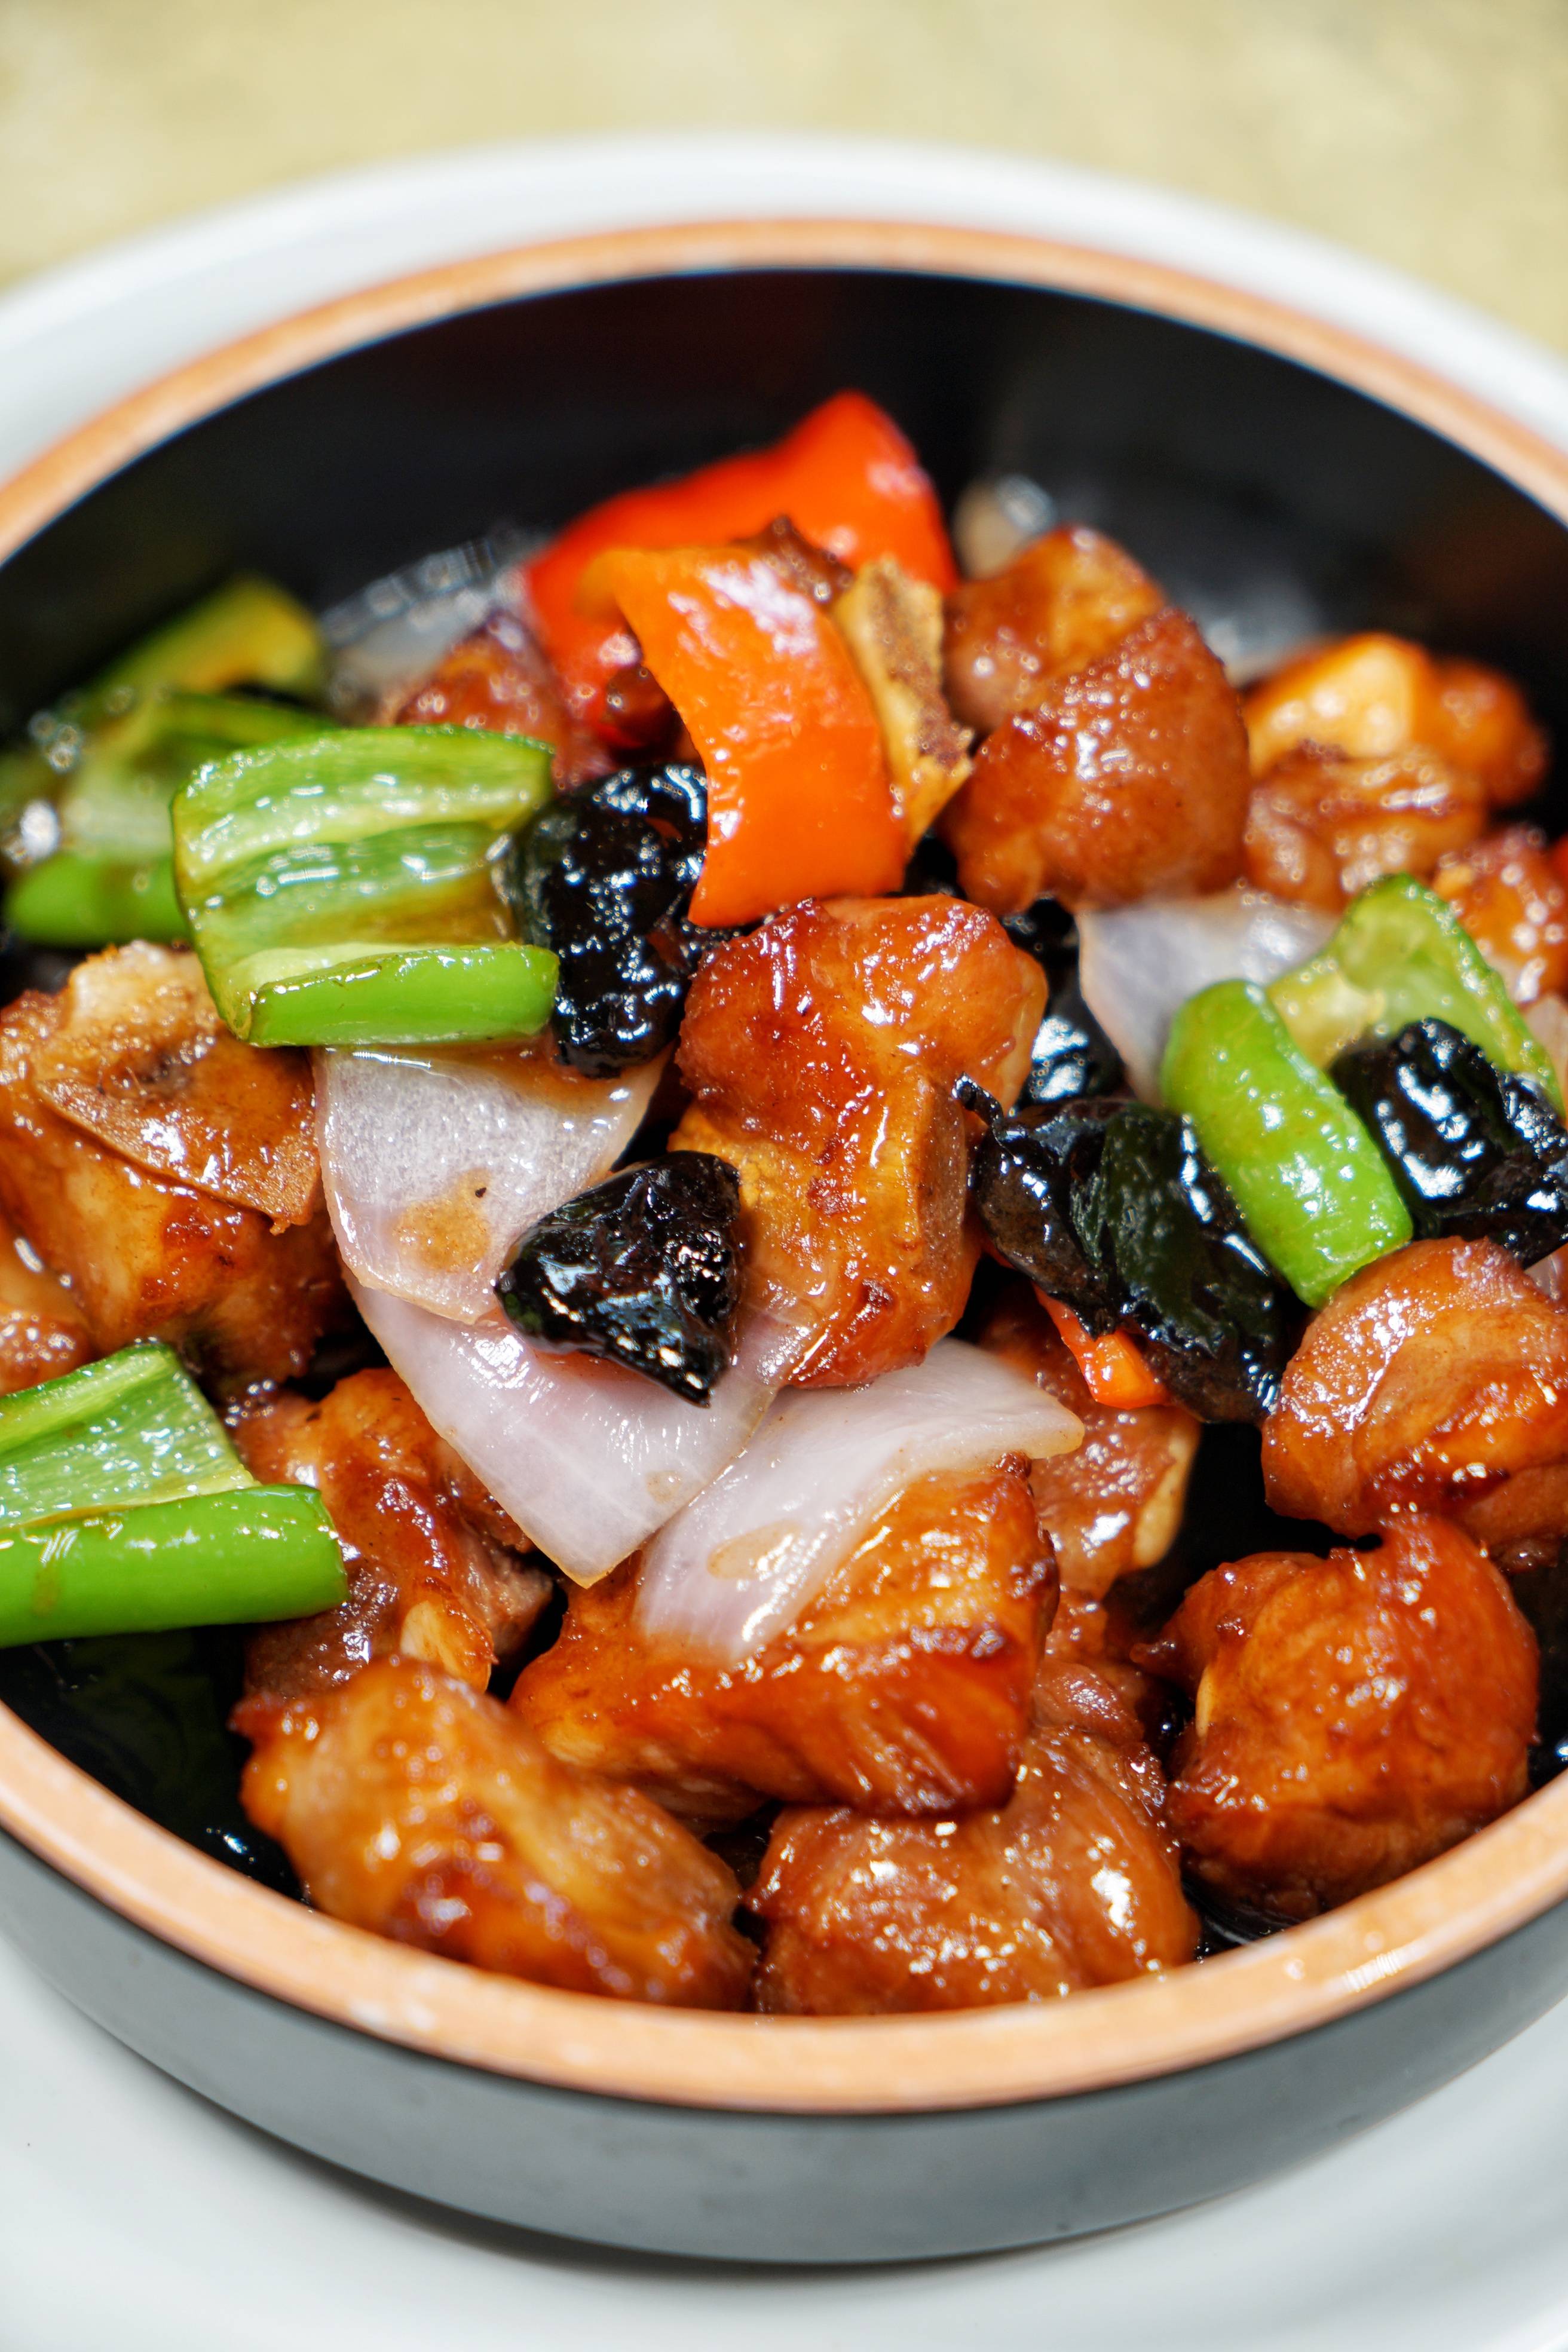 ①榄角焗排骨榄角是广东食客都很熟悉的怀旧食材,旧时多用来蒸鱼